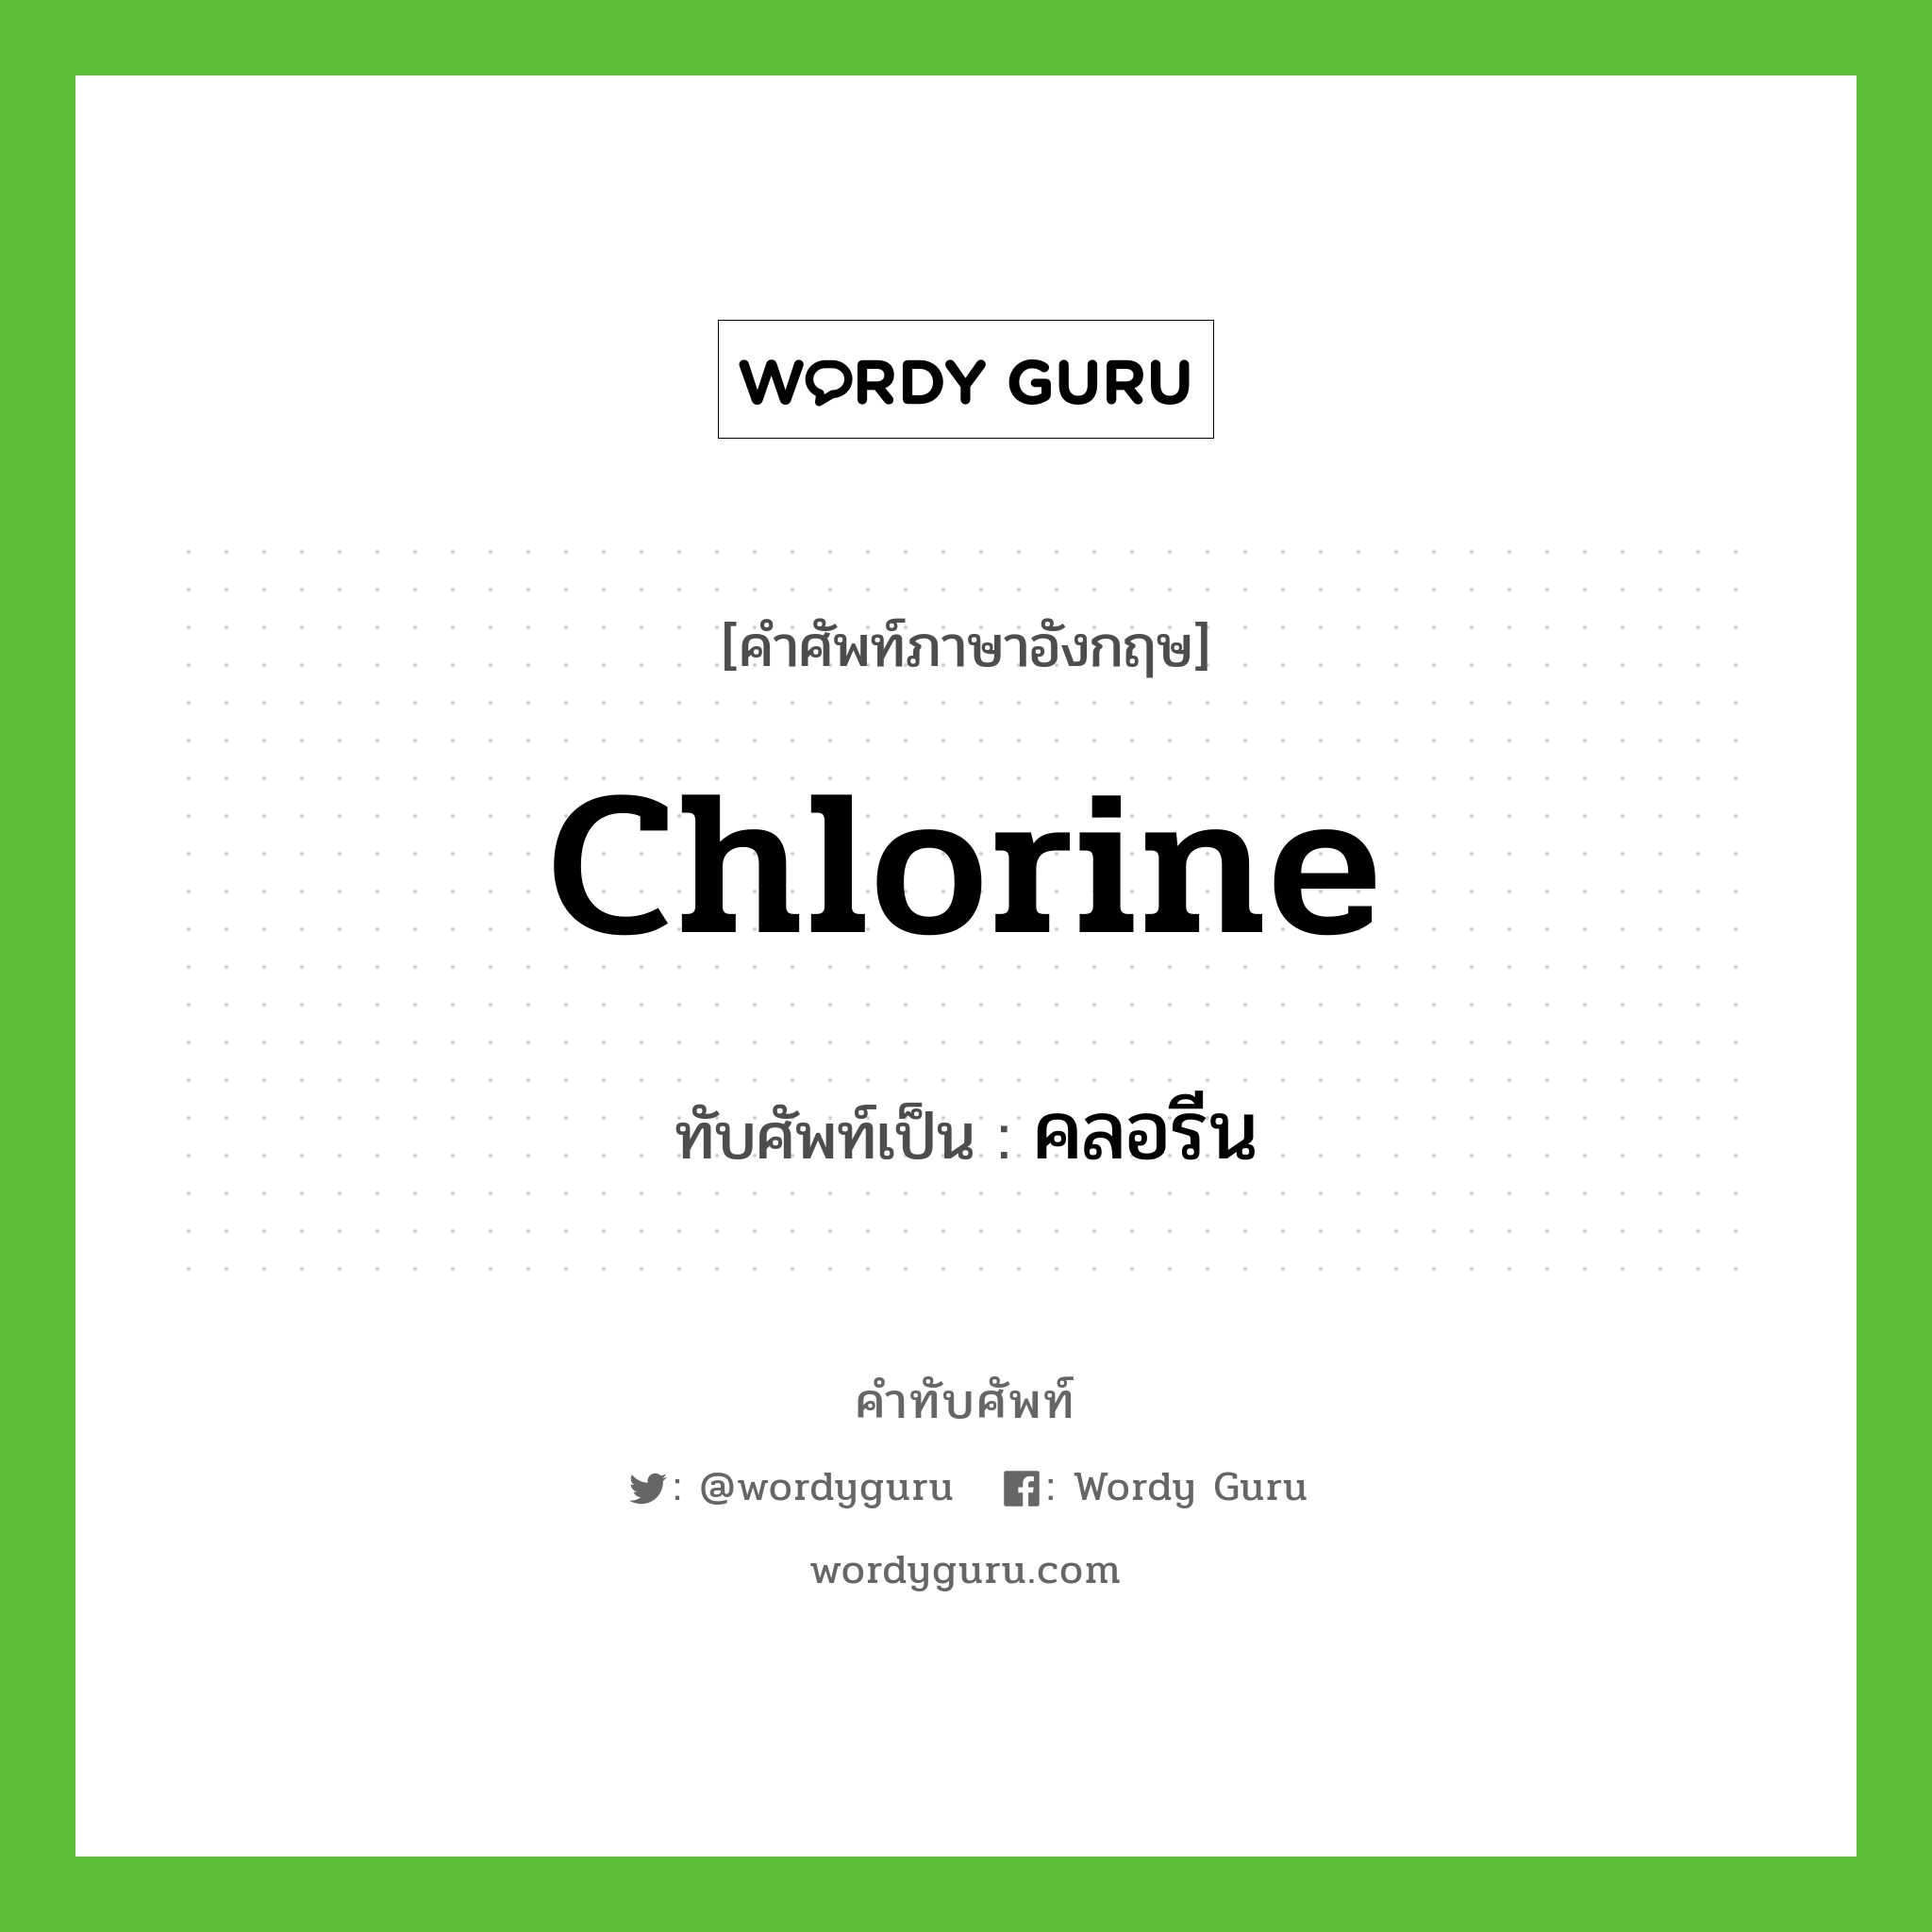 chlorine เขียนเป็นคำไทยว่าอะไร?, คำศัพท์ภาษาอังกฤษ chlorine ทับศัพท์เป็น คลอรีน